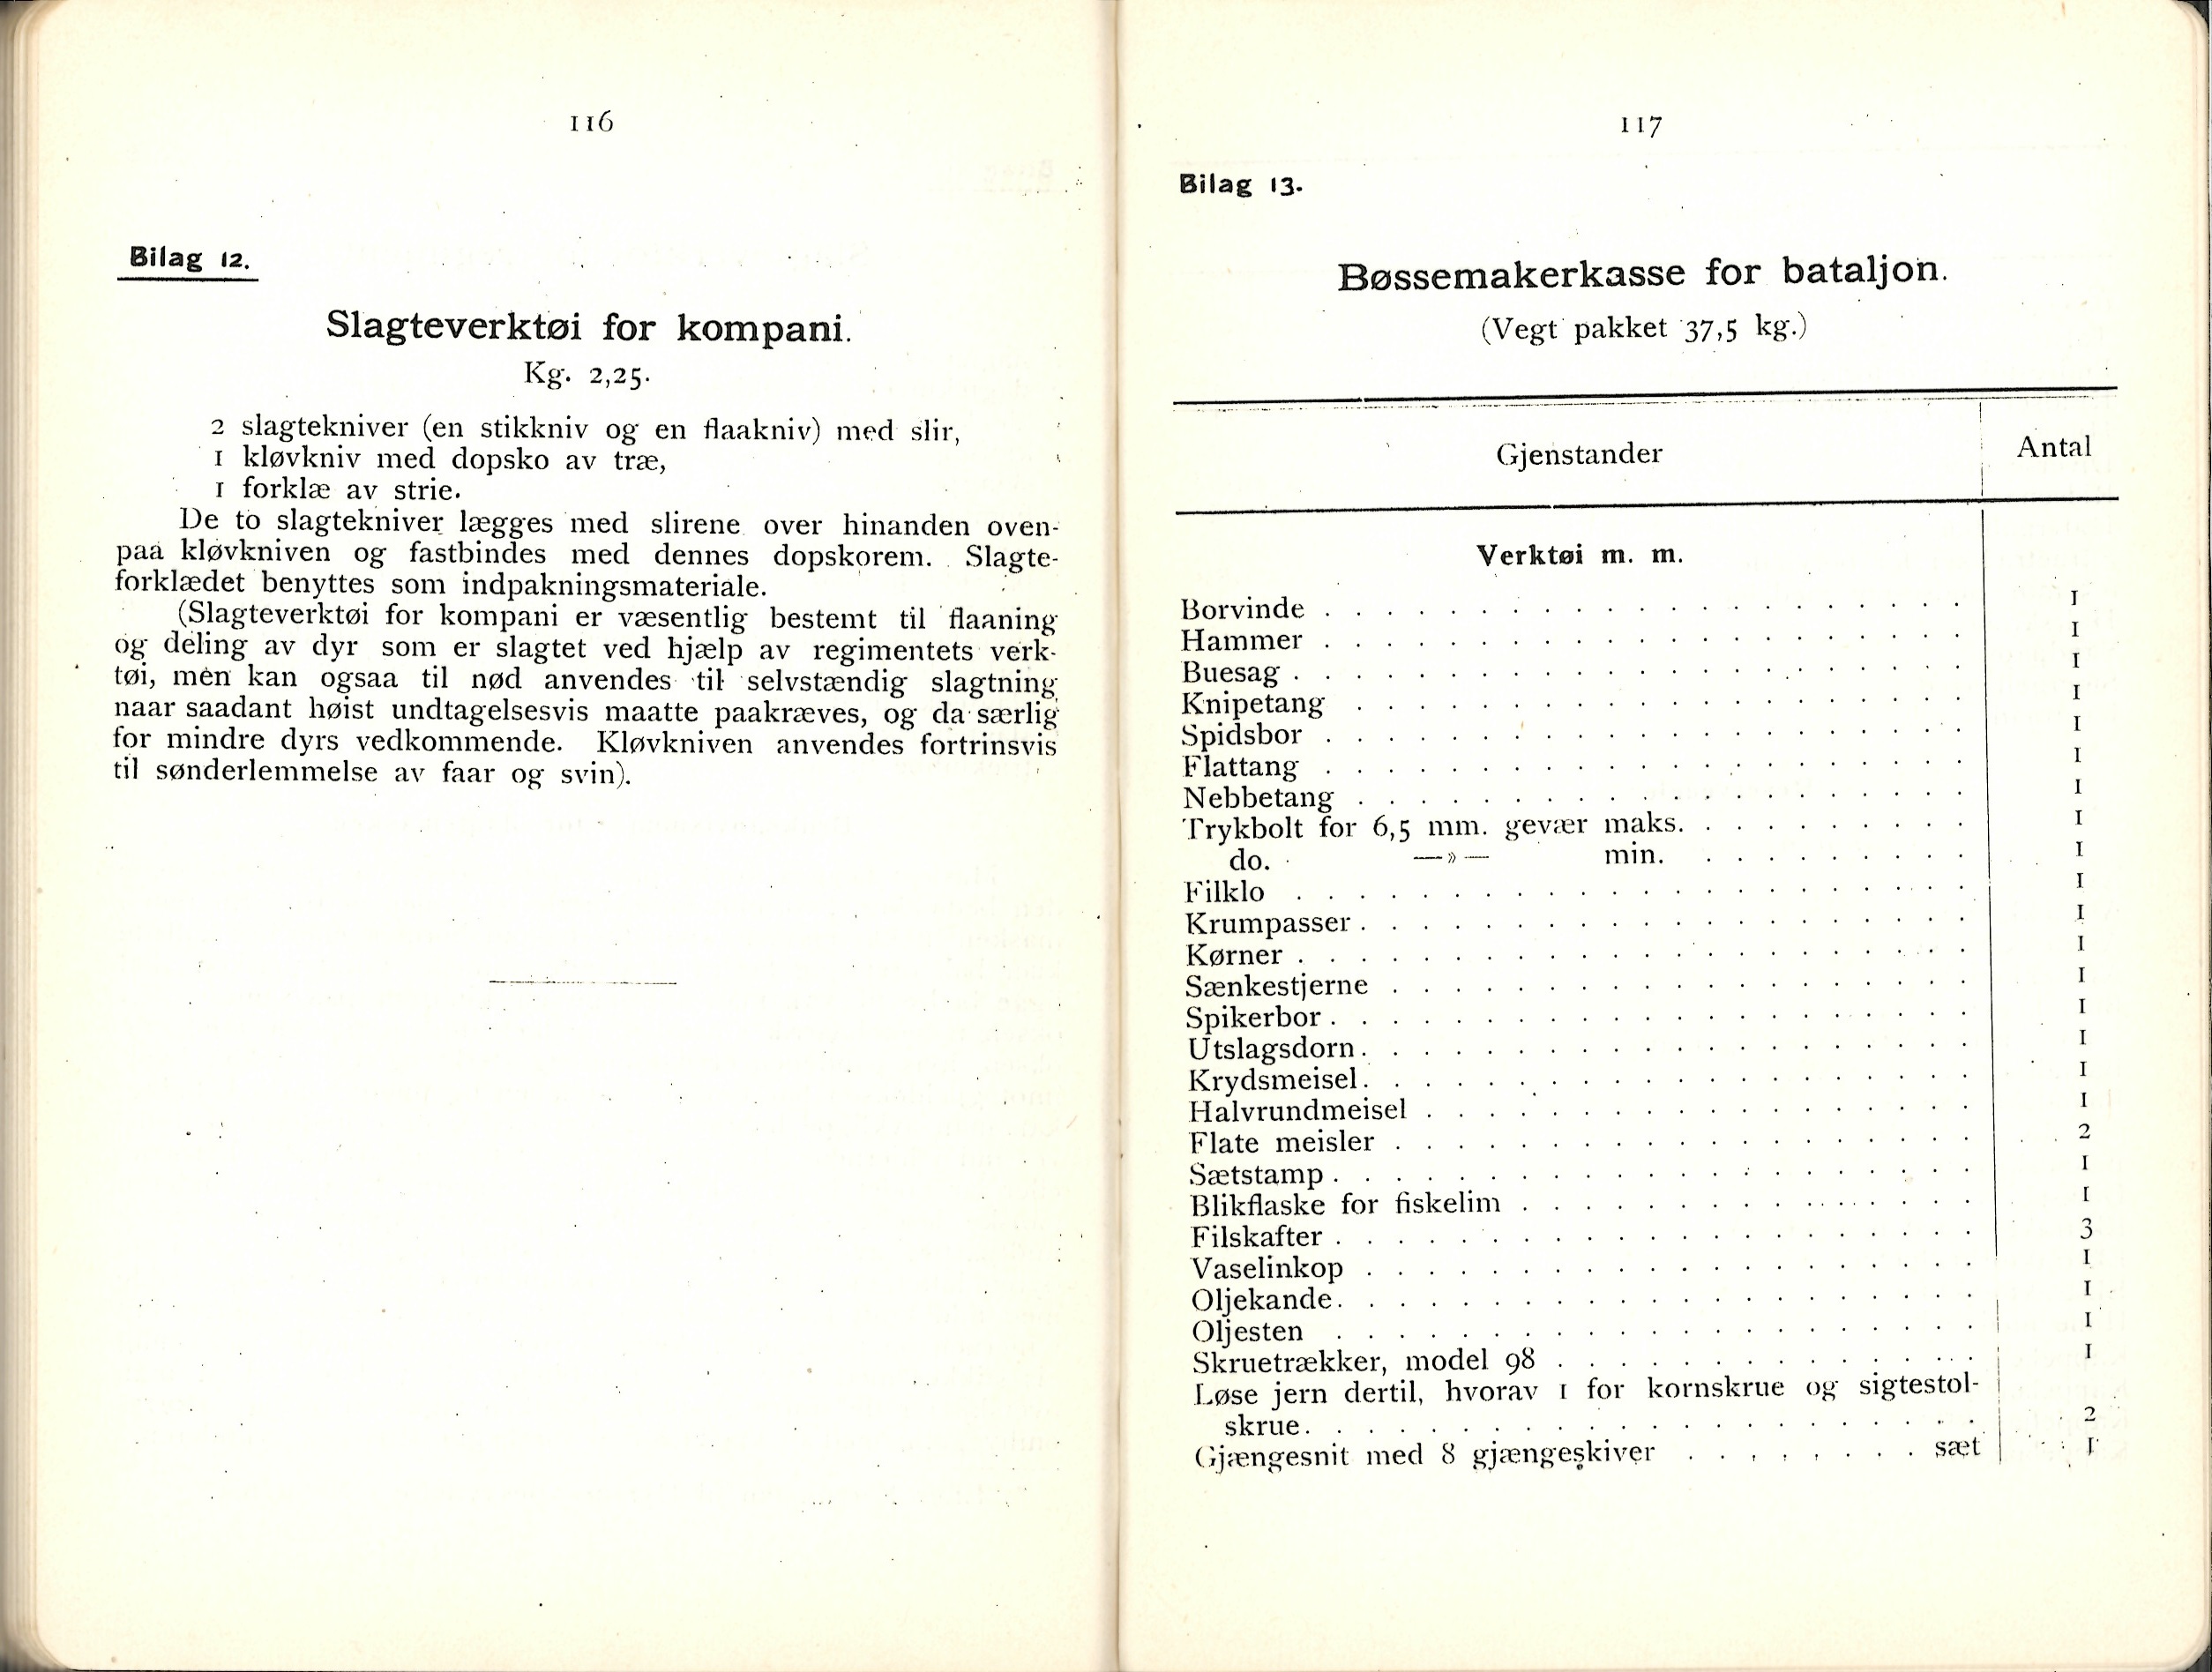 ./doc/reglement/Utrustning/Utrustnings-og-Pakningsplan-1917-15.jpg